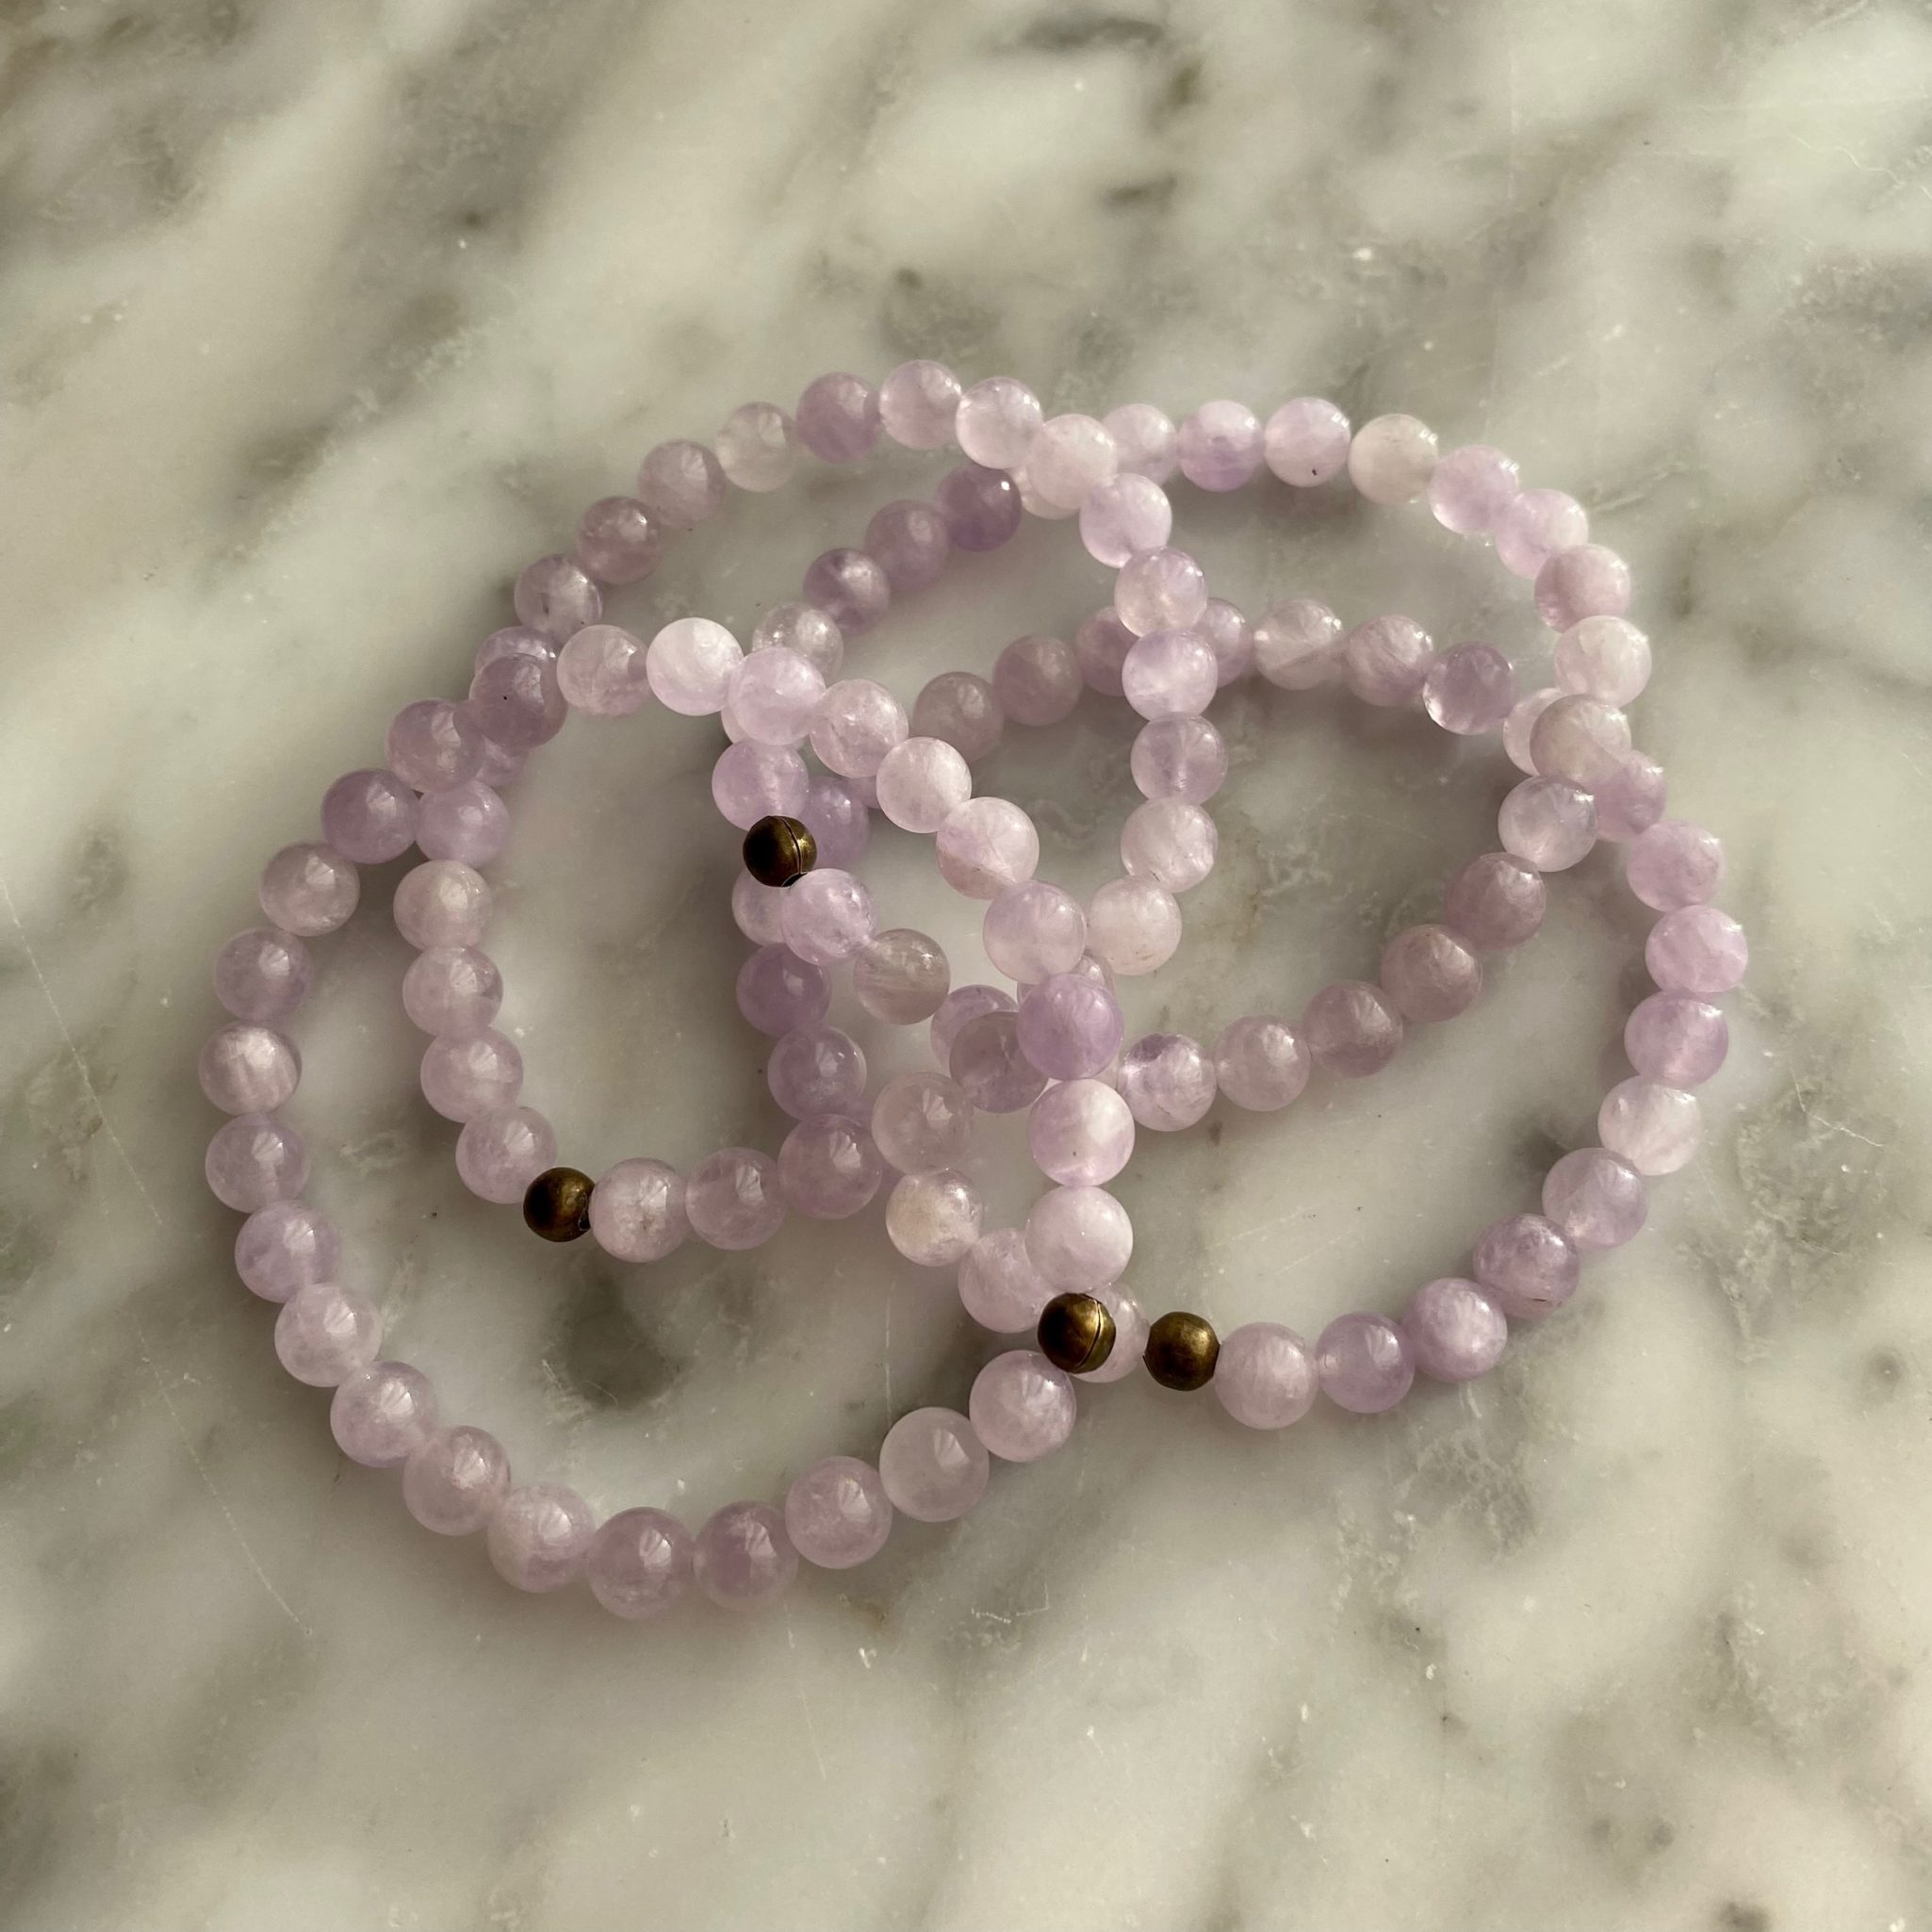 Amethyst - Lilac Amethyst Bracelet - Spiritual Growth - Minera